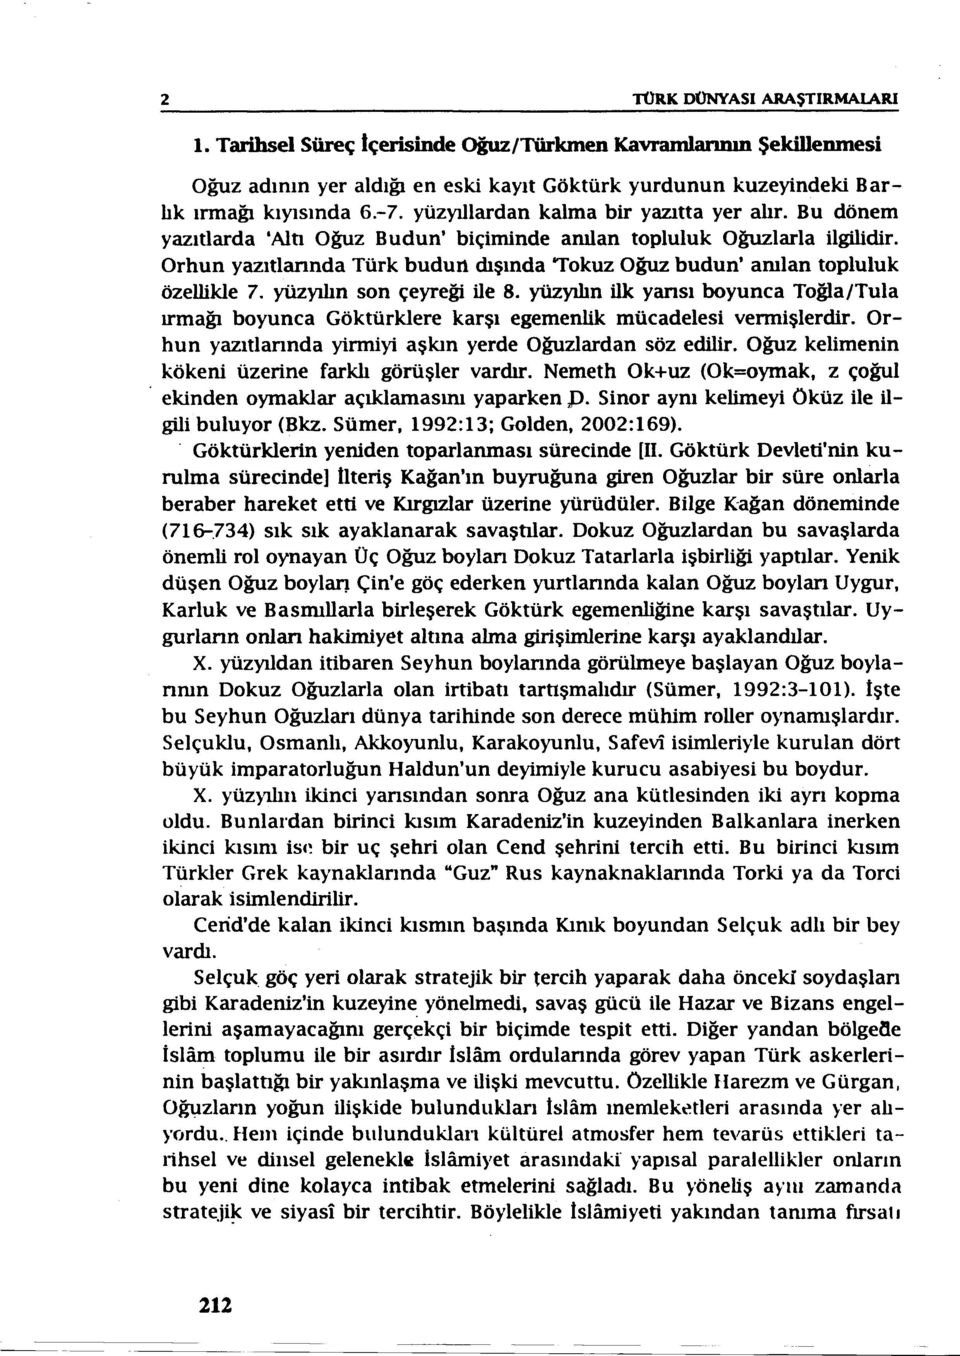 Orhun yazıtlarındatürk budun dışında 'Tokuz Oğuz budun' amlan topluluk özellikle 7. yüzyılın son çeyreği ile 8.